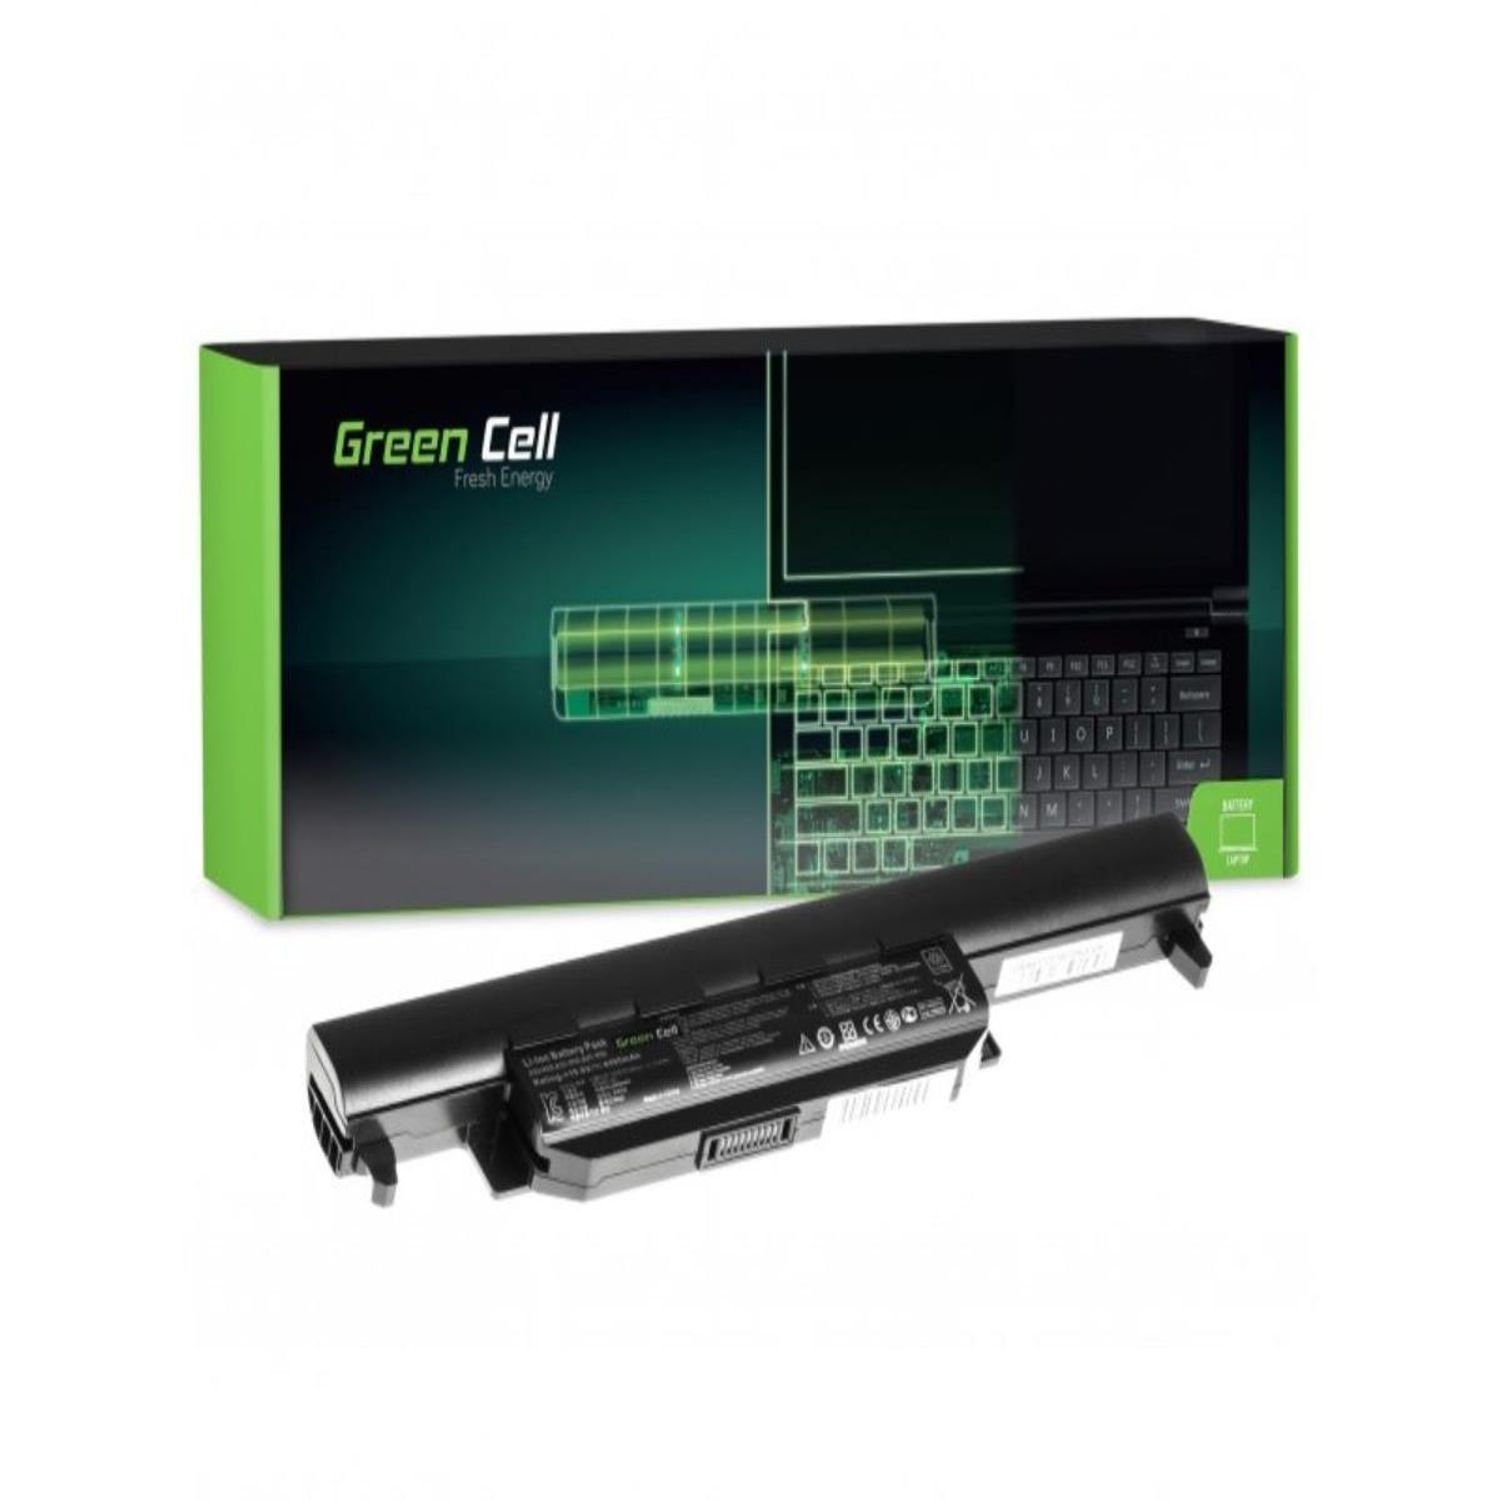 Green Cell AS37, K55VM für A32-K55 Laptop-Akku Akku R500V R700 K55 Laptops K55A R500 R500V K55VJ K55VD R400 Asus Asus